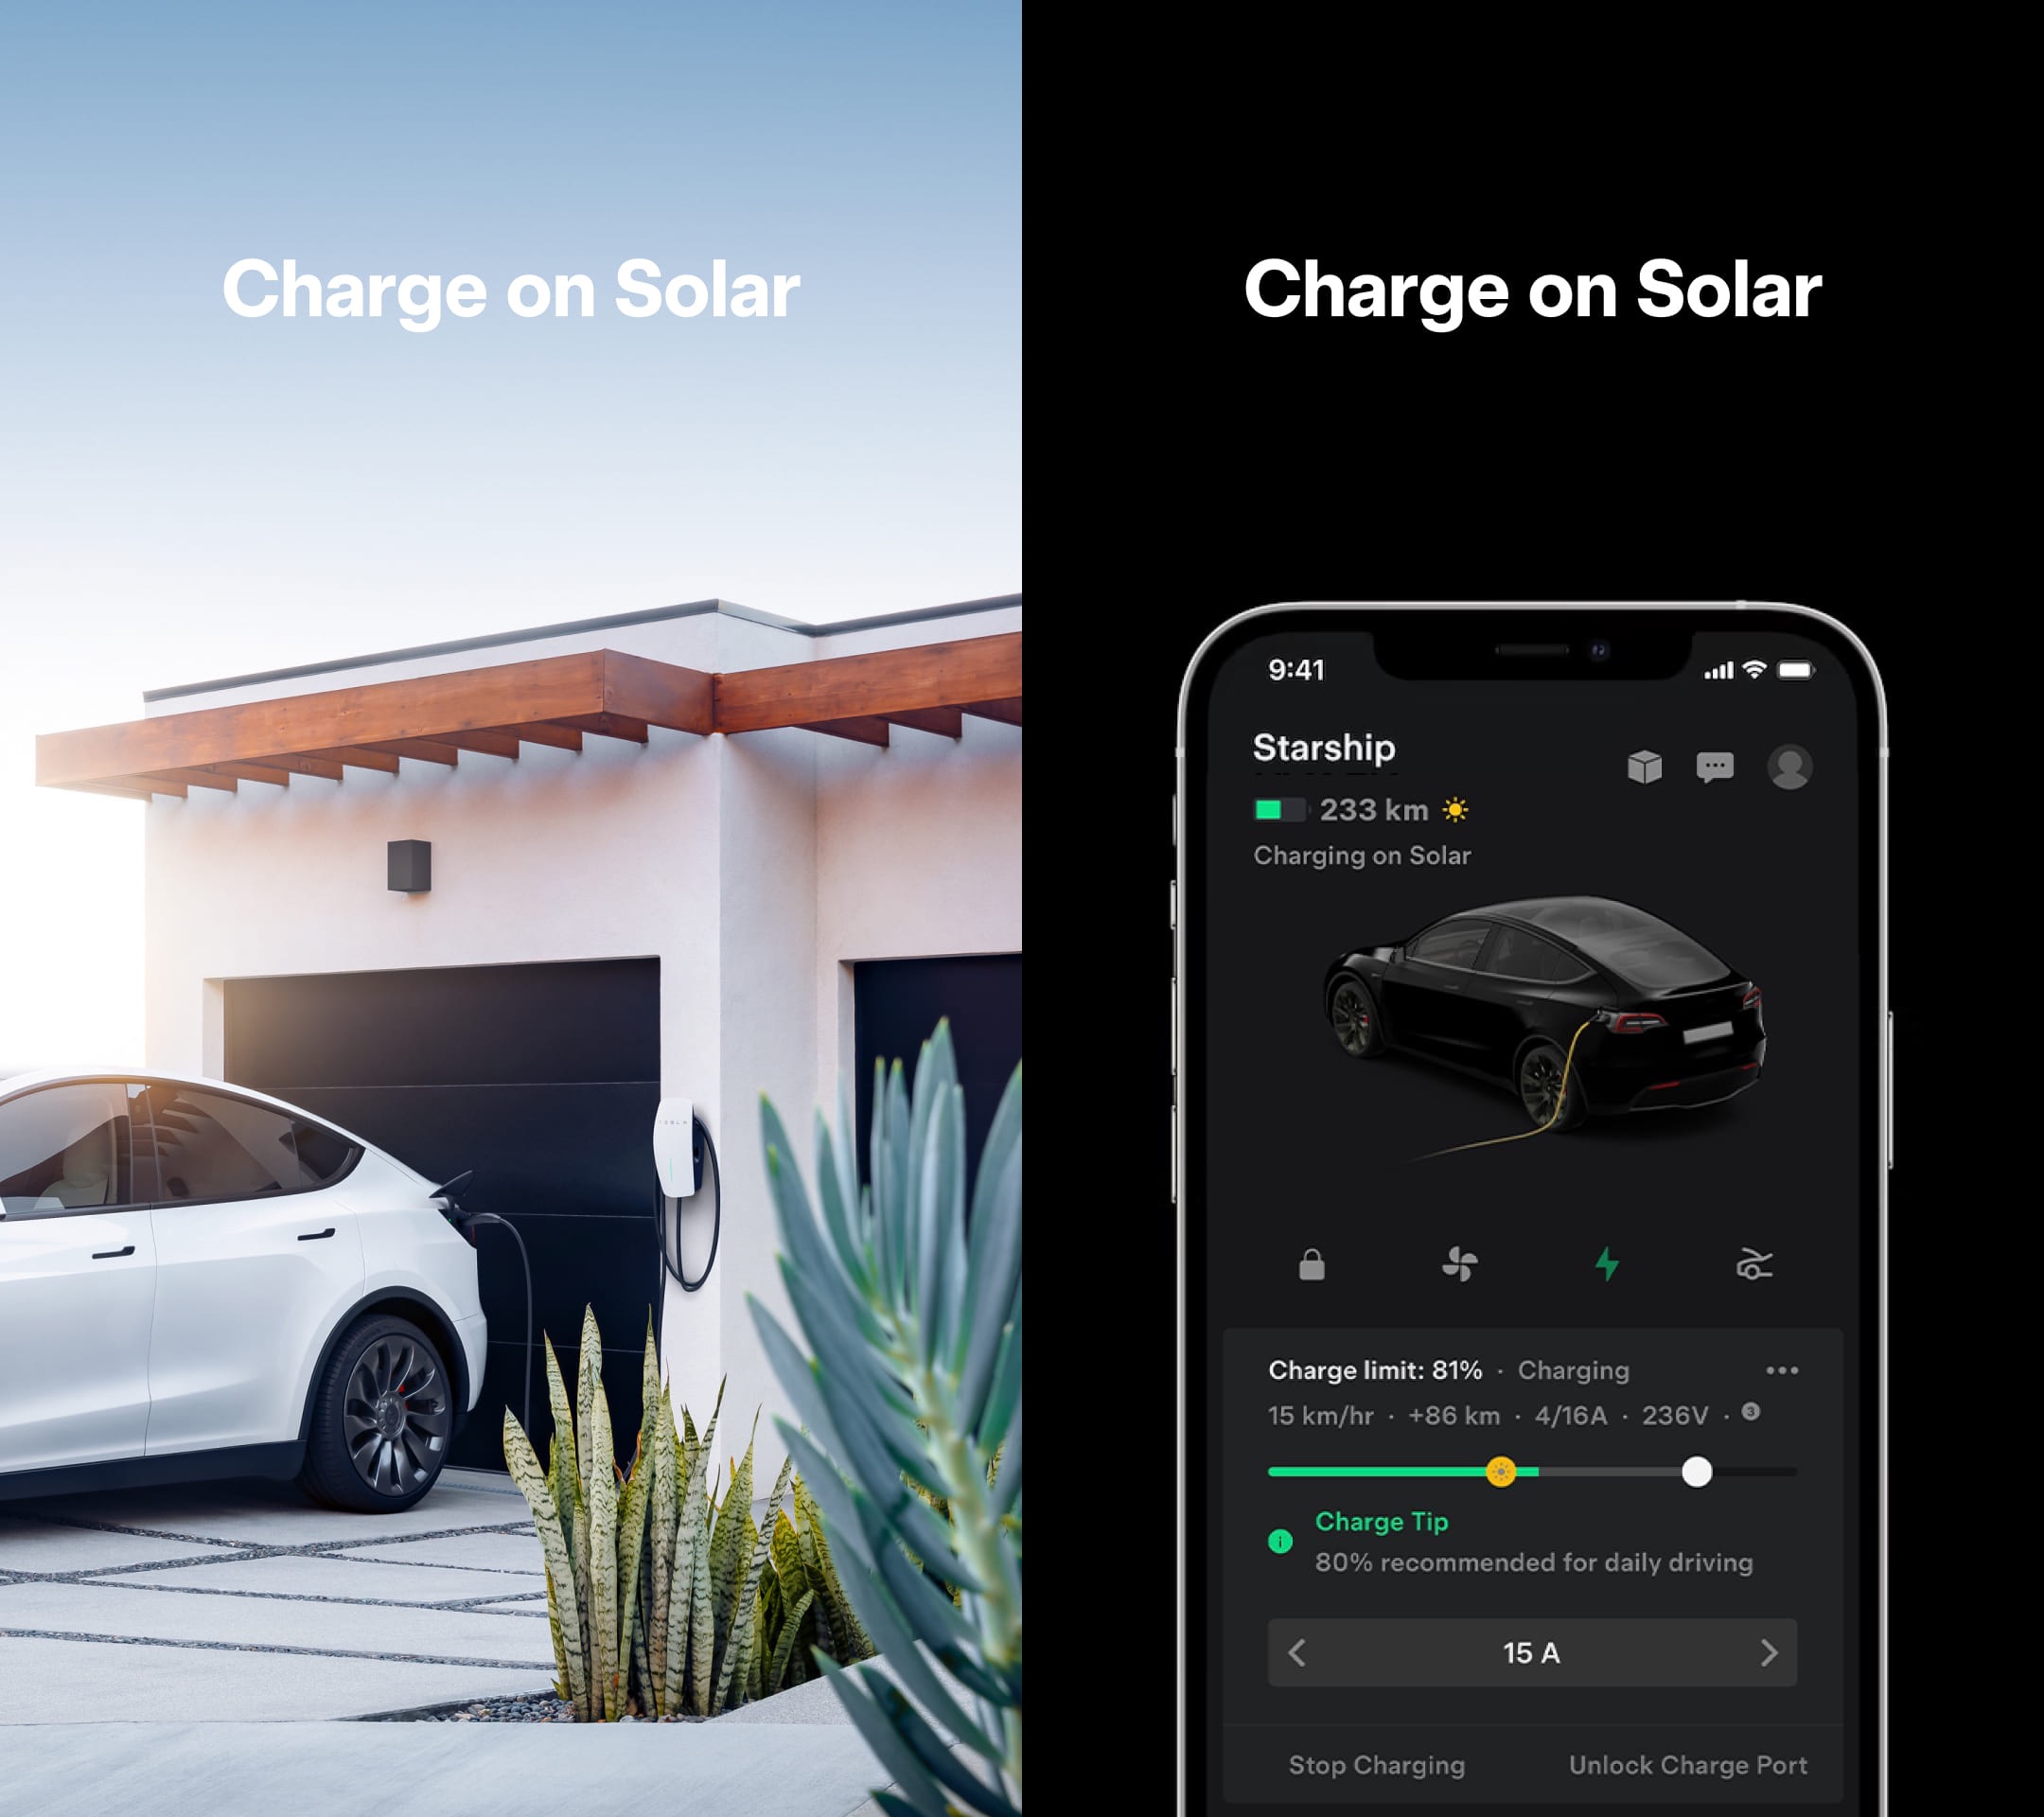 Charge on solar Tesla image